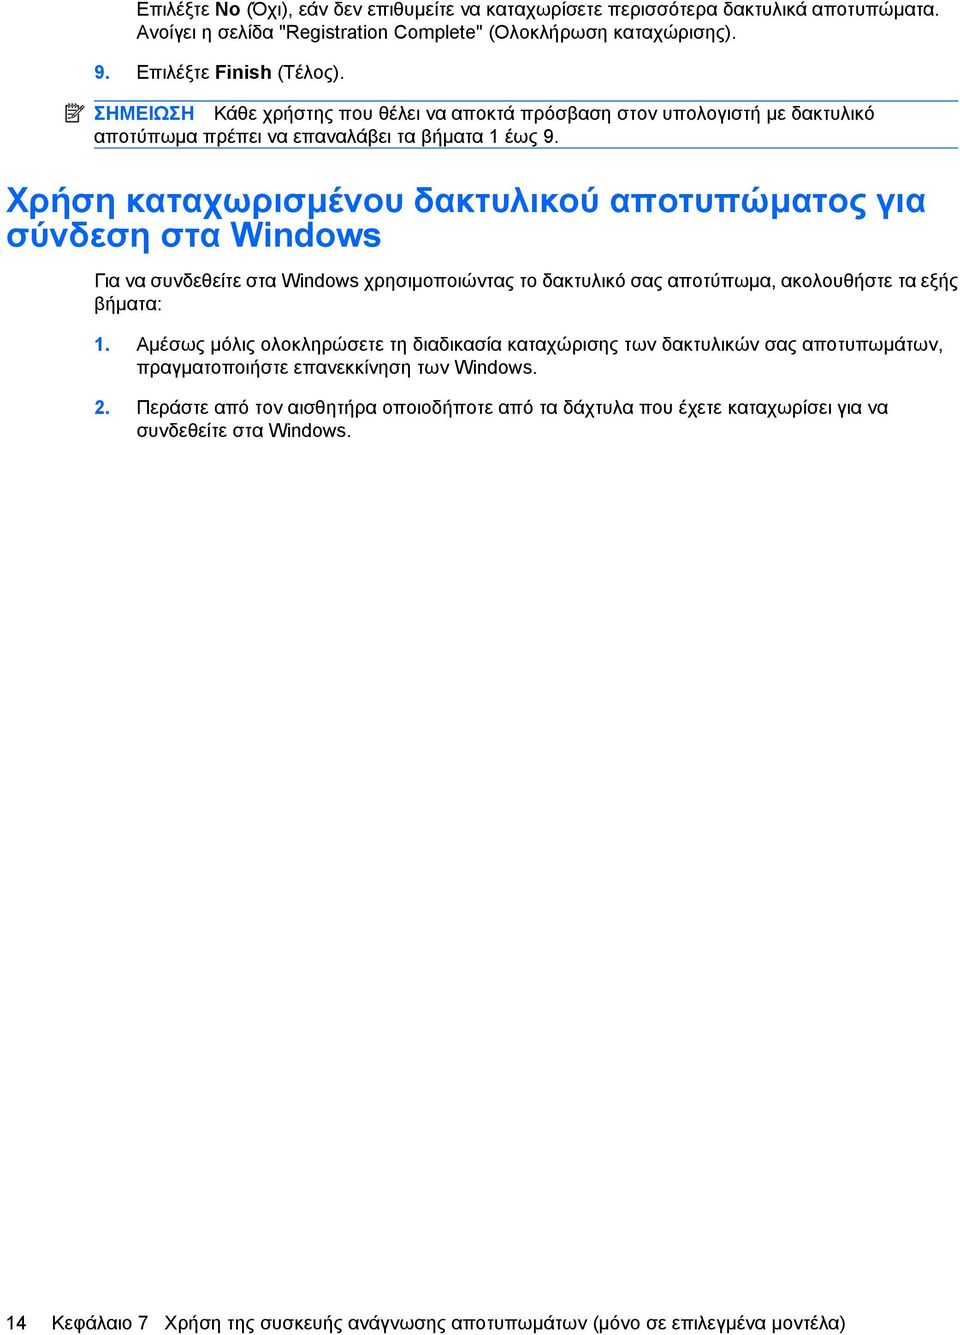 Χρήση καταχωρισµένου δακτυλικού αποτυπώµατος για σύνδεση στα Windows Για να συνδεθείτε στα Windows χρησιµοποιώντας το δακτυλικό σας αποτύπωµα, ακολουθήστε τα εξής βήµατα: 1.